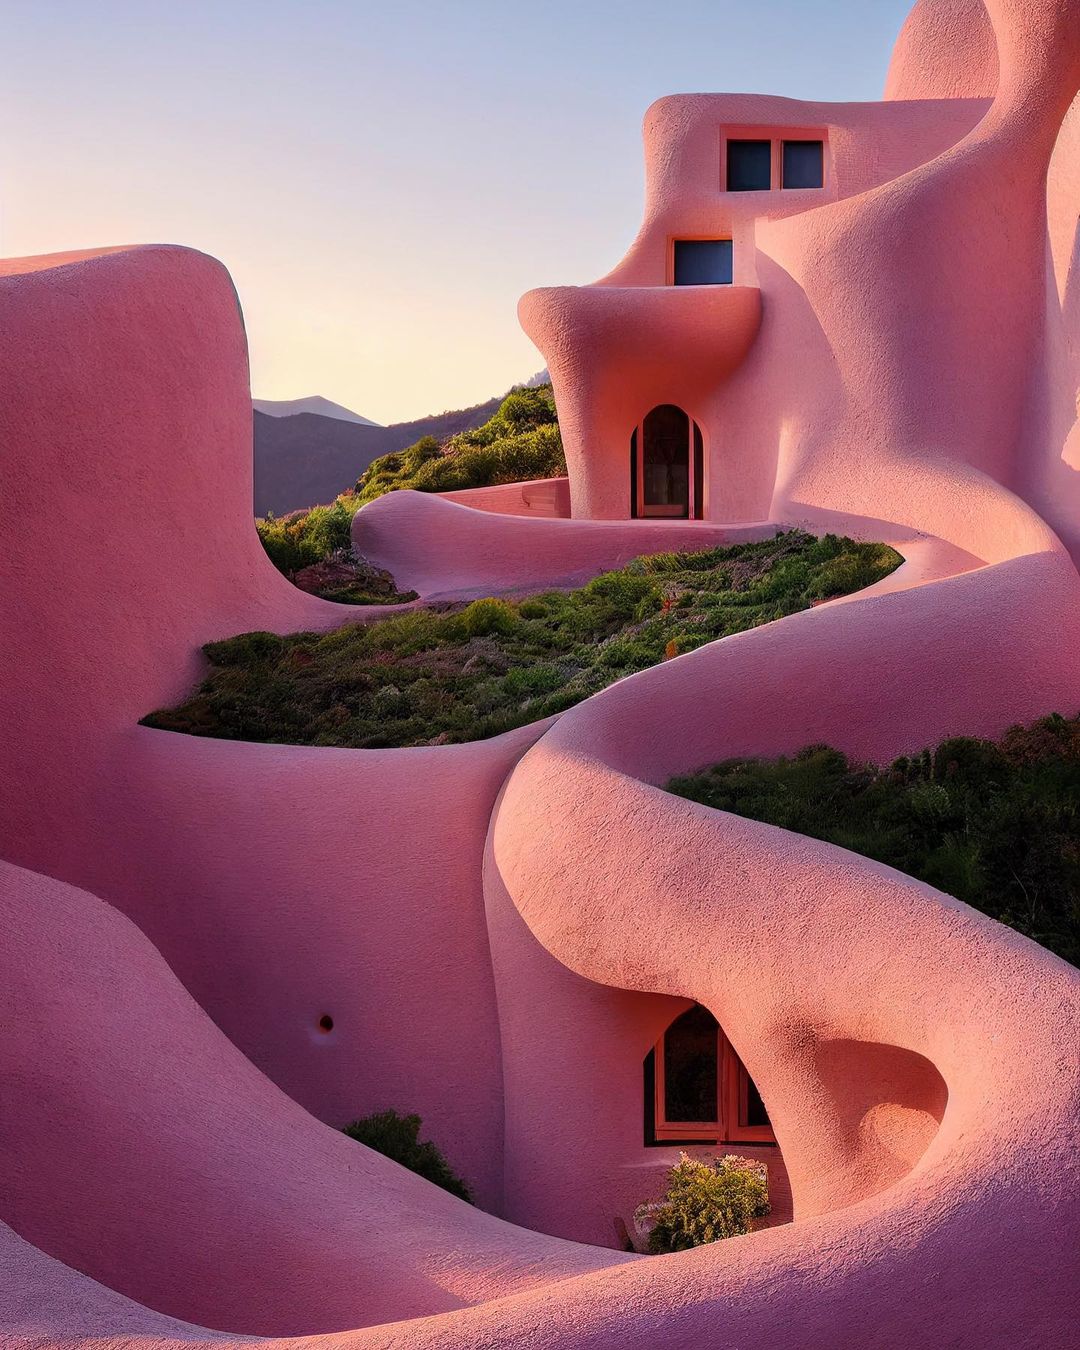 Savršeni svijet inspiriran radom slavnog španjolskog arhitekta Antonija Gaudija